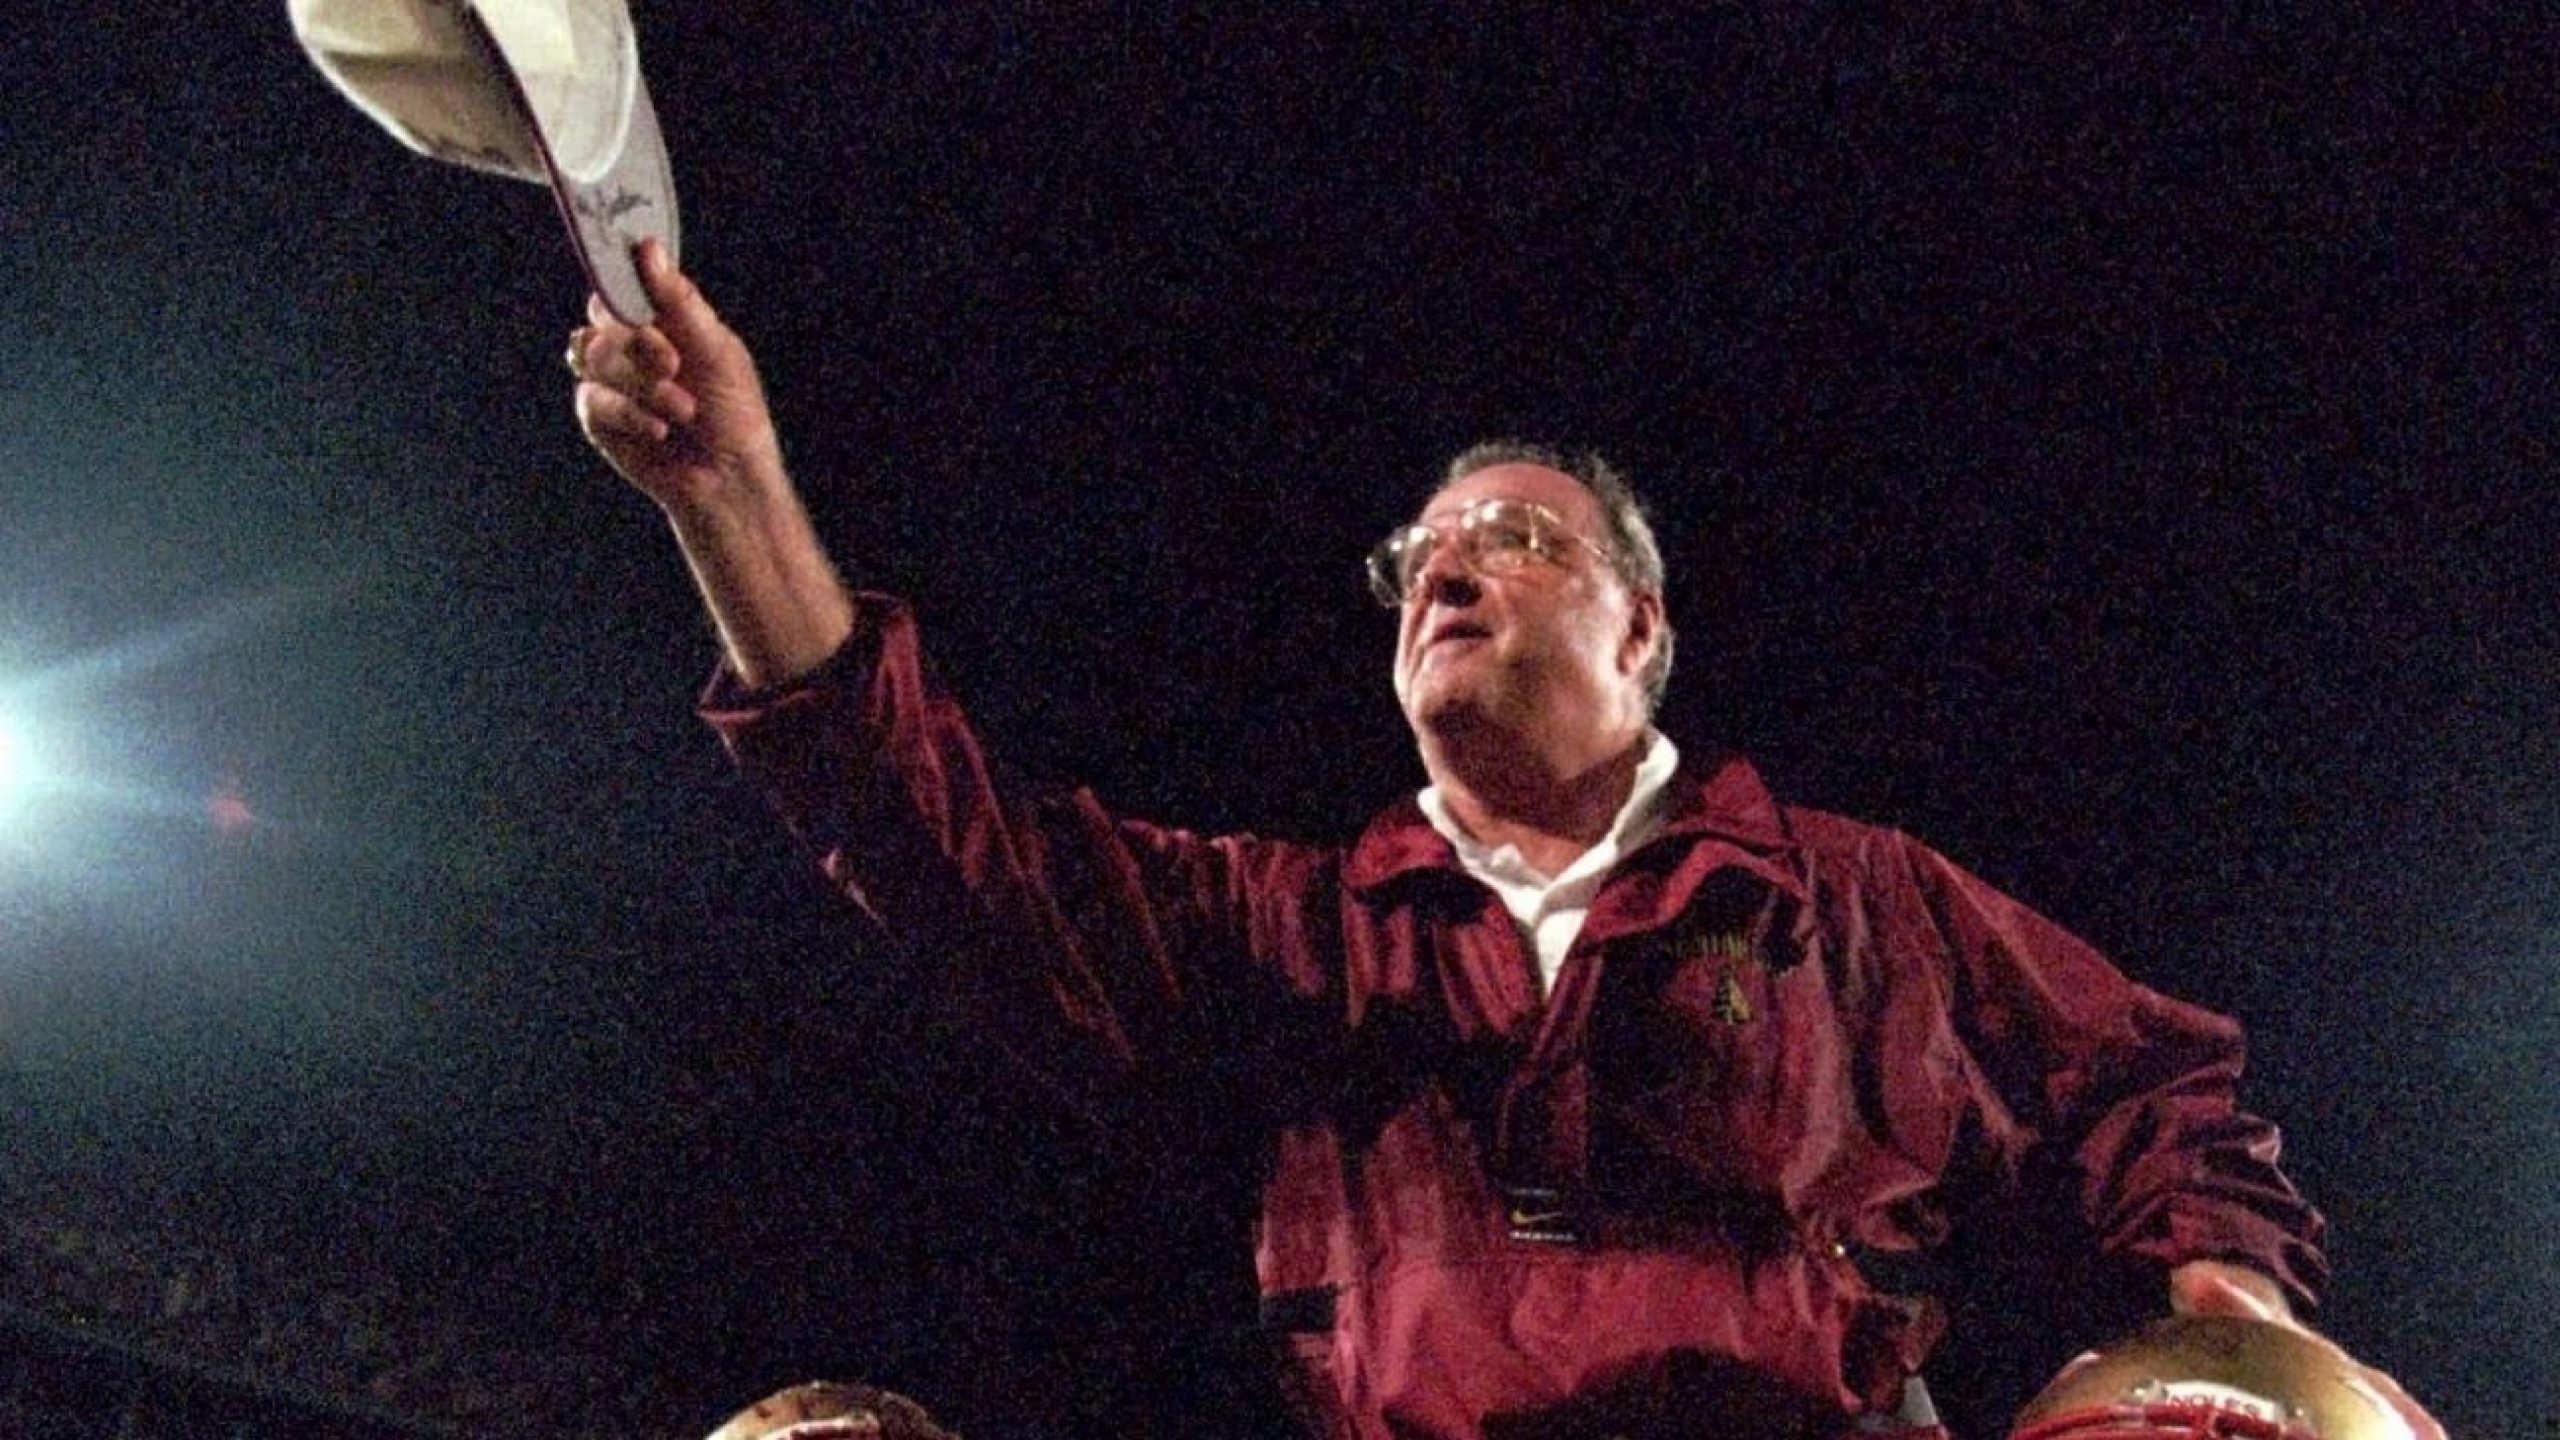 Legendary FSU coach Bobby Bowden dies at 91